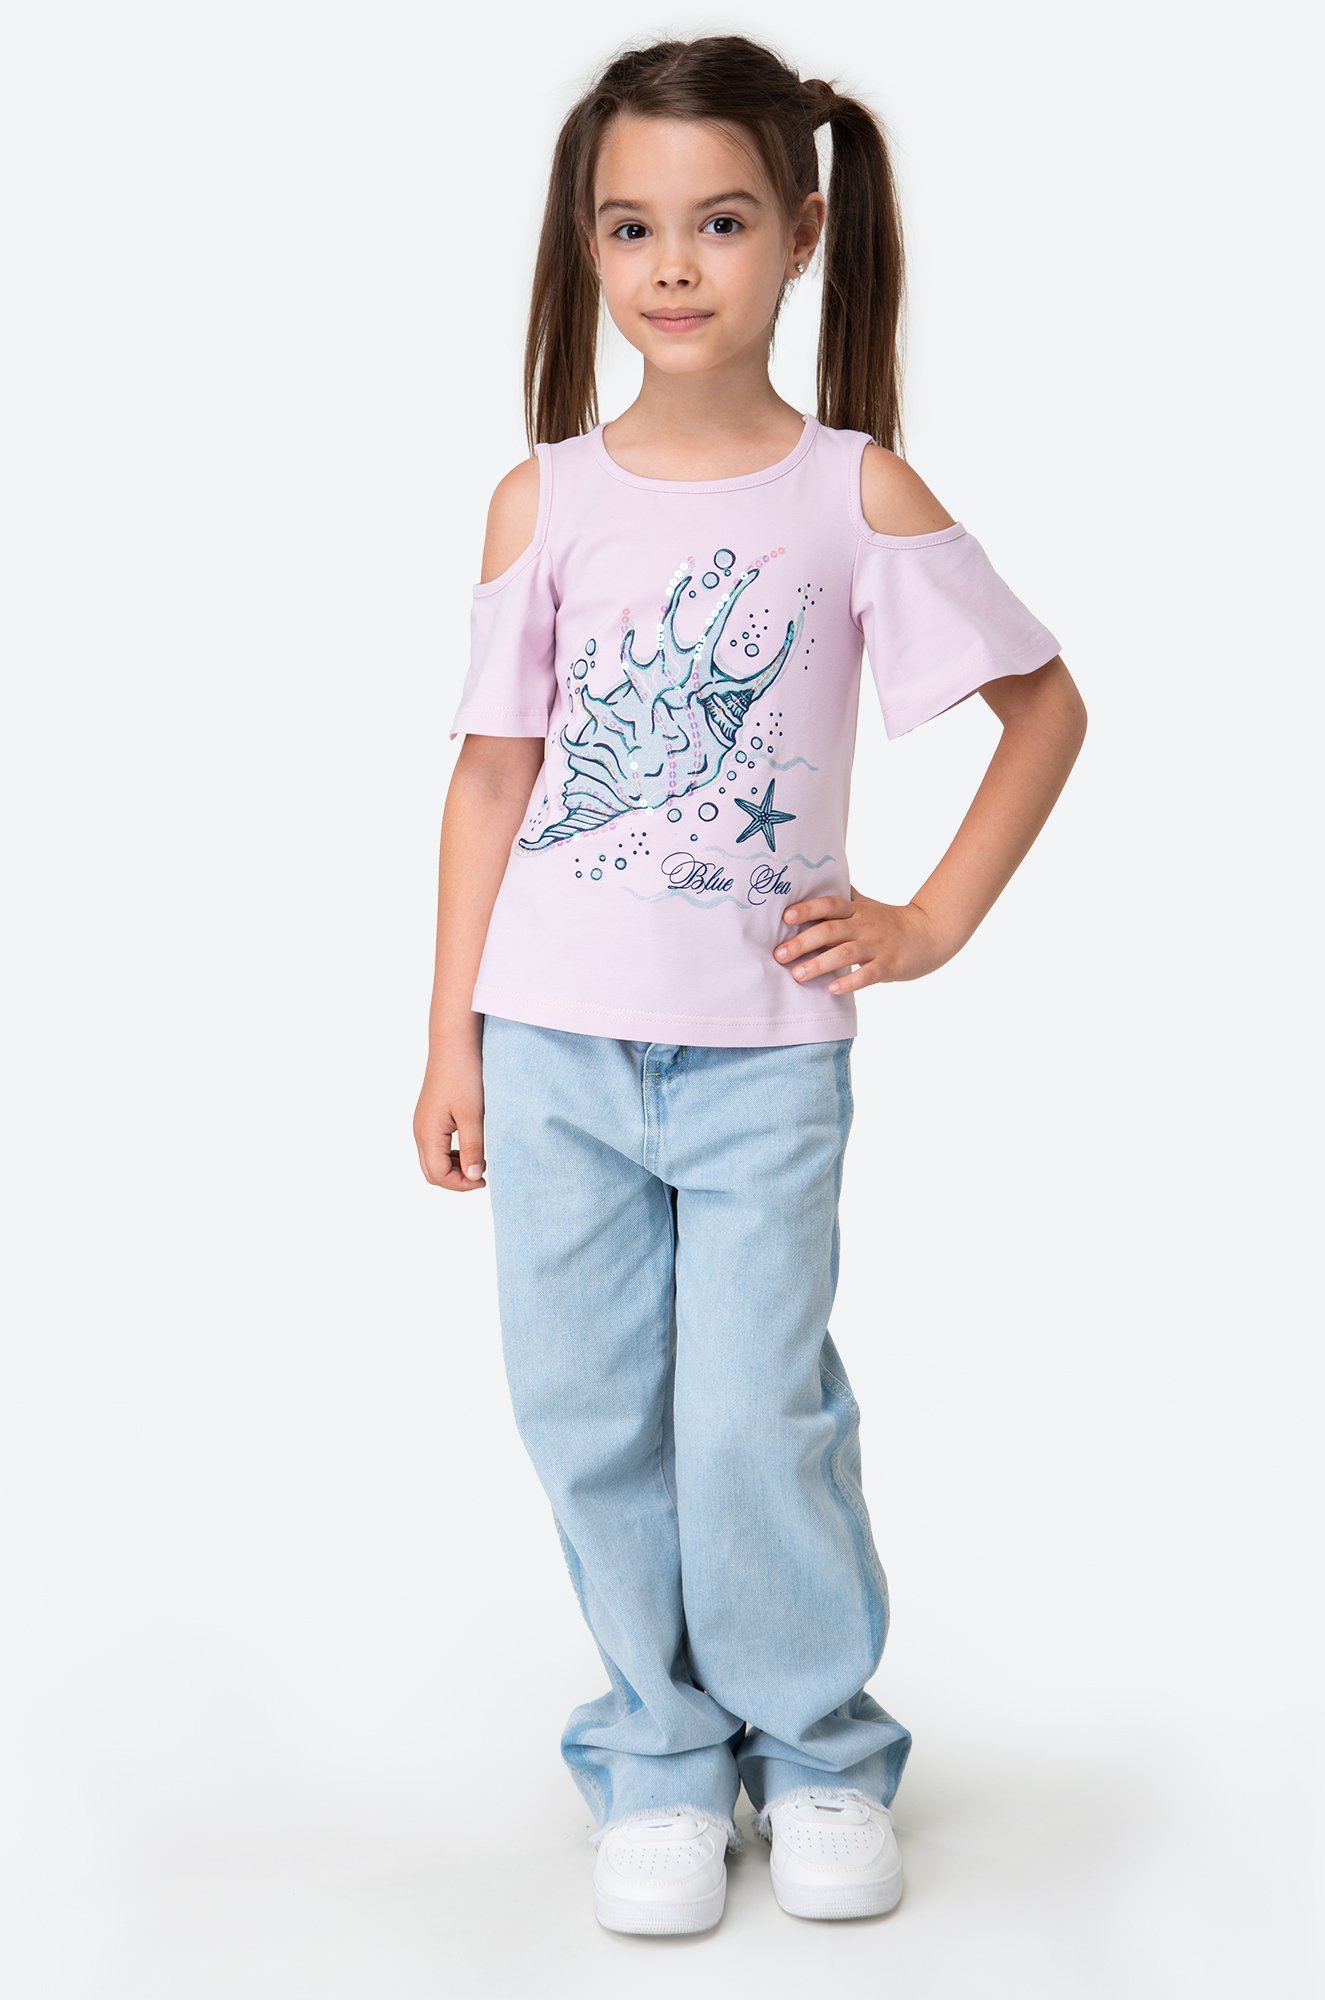 Хлопковая футболка с лайкрой для девочки Luneva